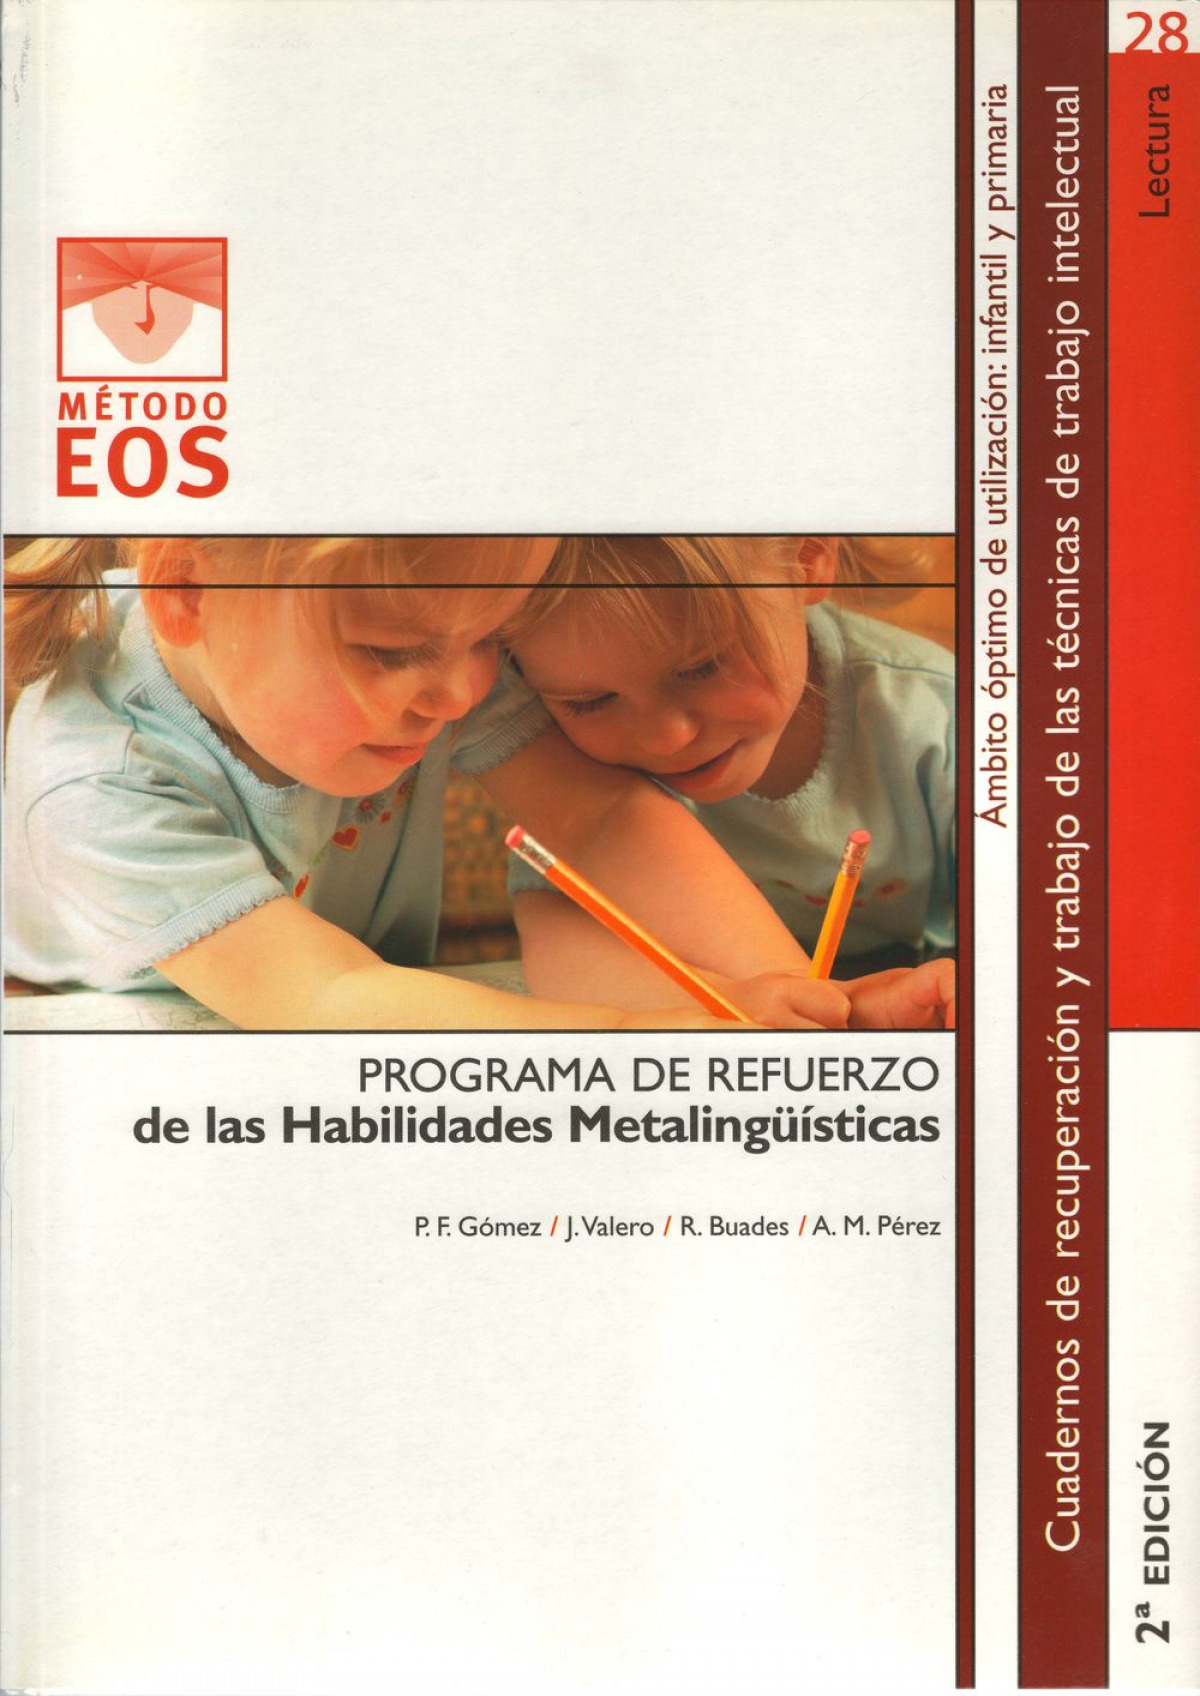 Crr28. habilidades metalinguisticas (2ª edicion) - Gomez,P.F./Valero,J./Buades,R./Perez,A.M